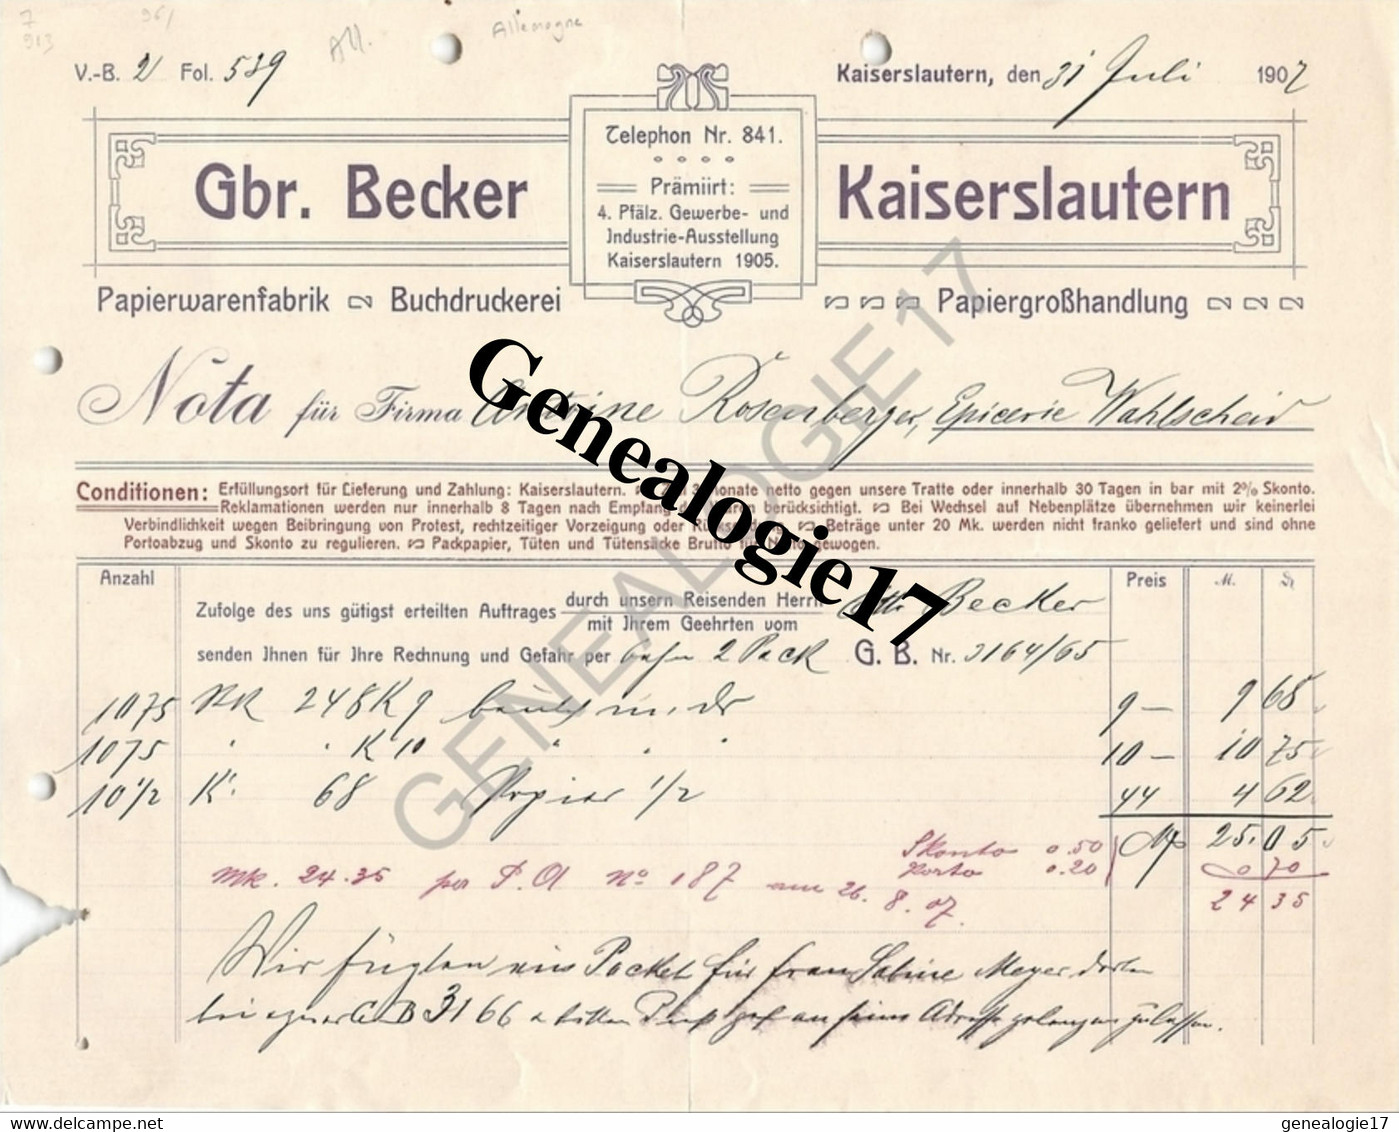 96 0692 ALLEMAGNE KAISERLAUTERN Rhenanie Palatinat 1907 Papier Warenfabrik GBR. BECKER Buchdruckerei - Drukkerij & Papieren